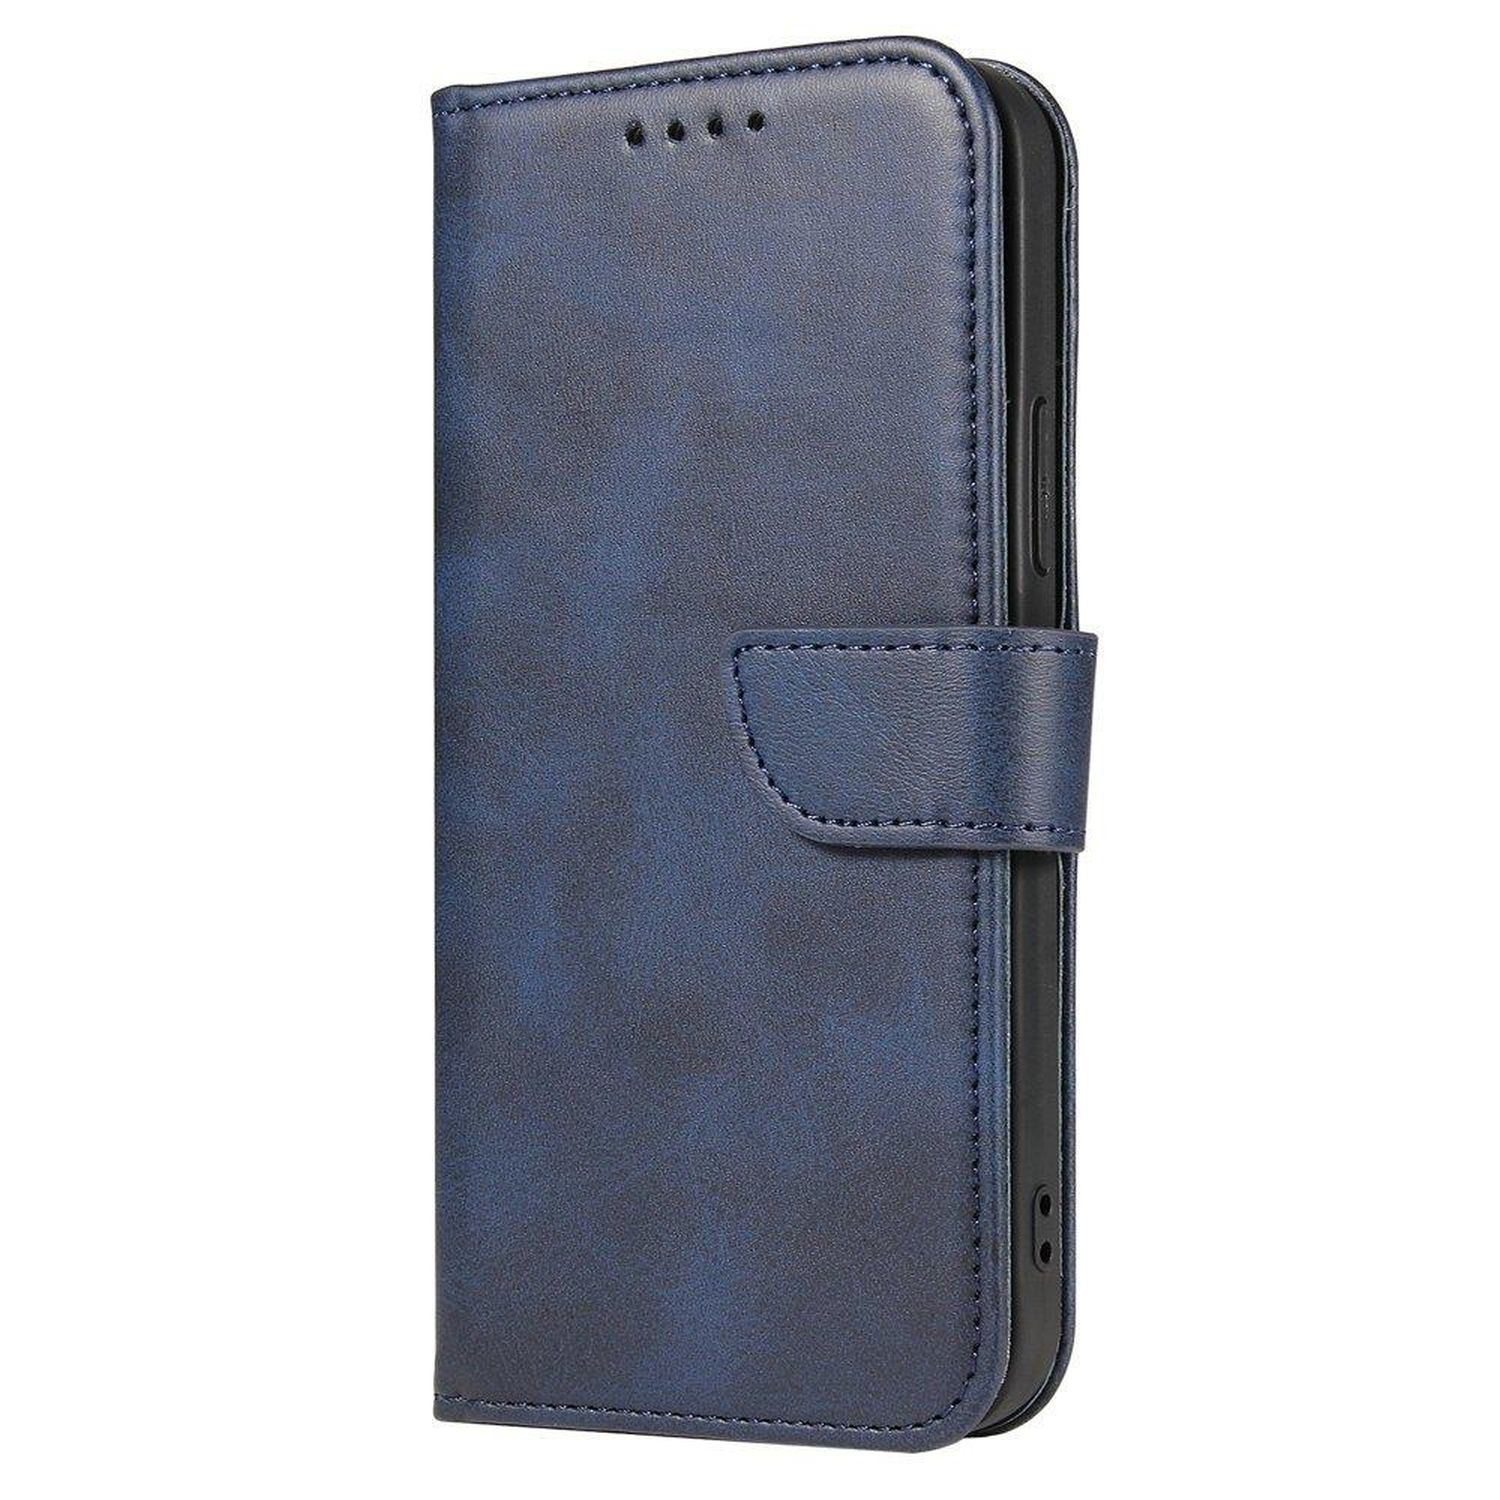 Blau A04s, Magnet Bookcover, Buch COFI Galaxy Samsung, Tasche,